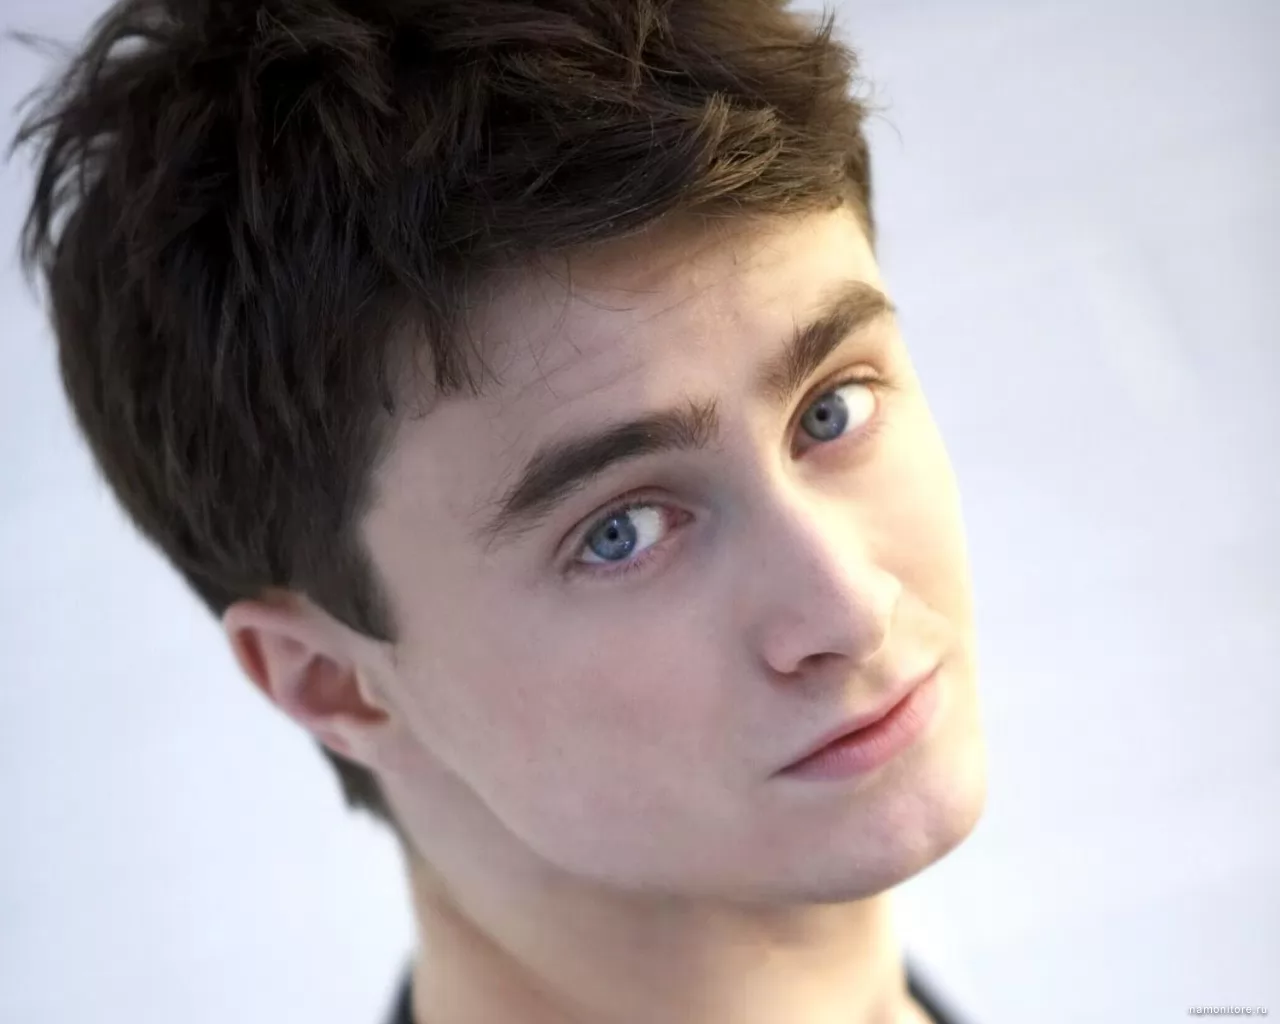 Daniel Radcliffe, знаменитости, мужчины, портрет, серое х